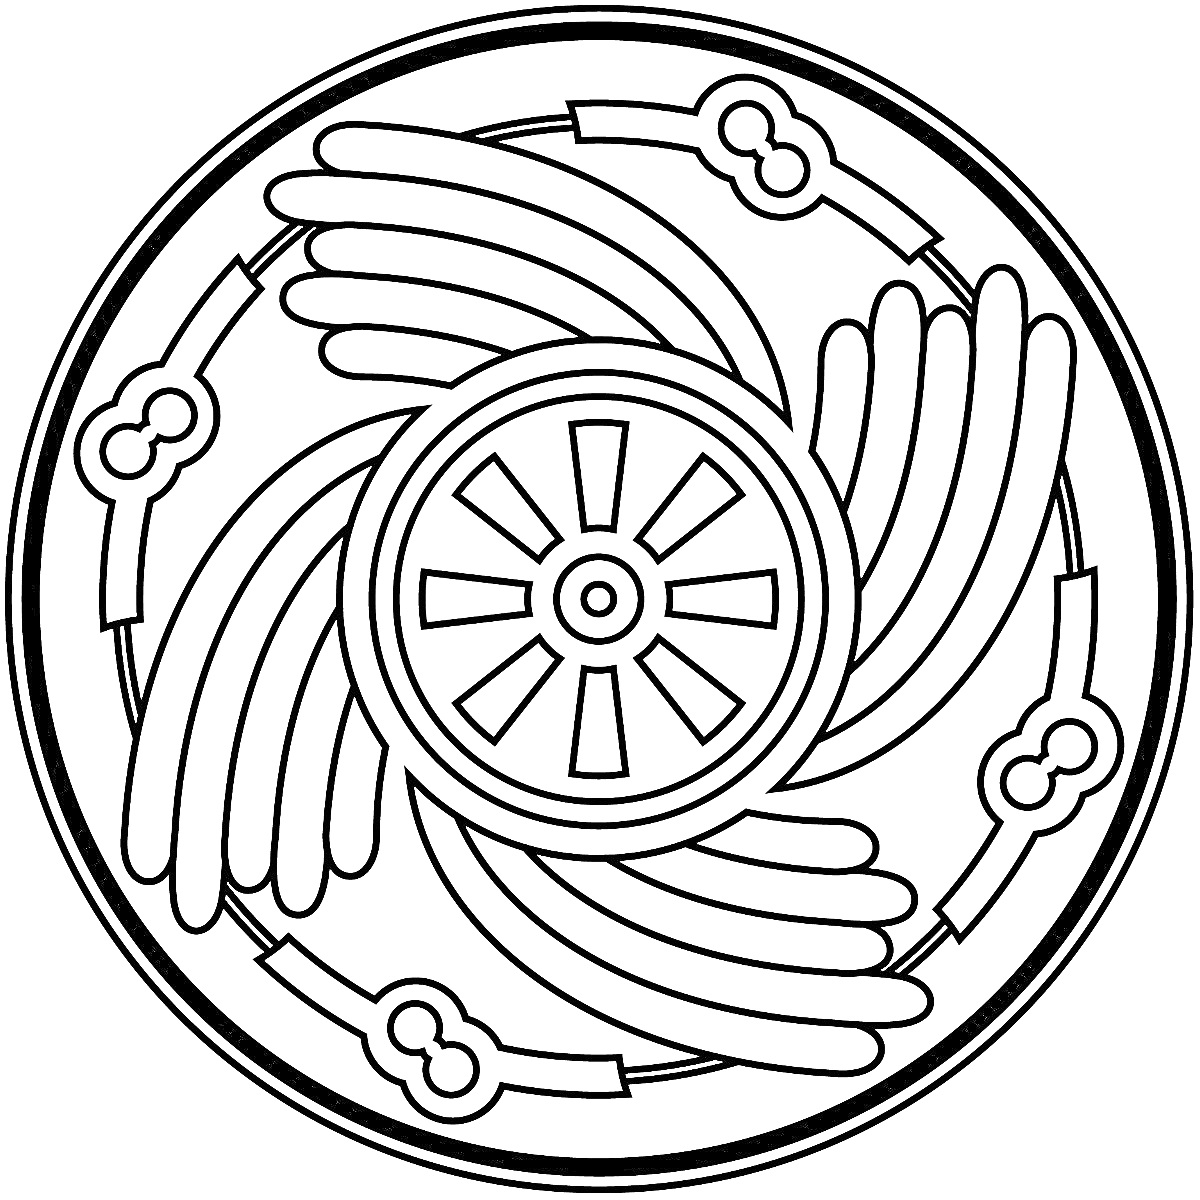 Мандала с центральным кругом-солнышком, крыльями и ободом с элементами в форме замочной скважины